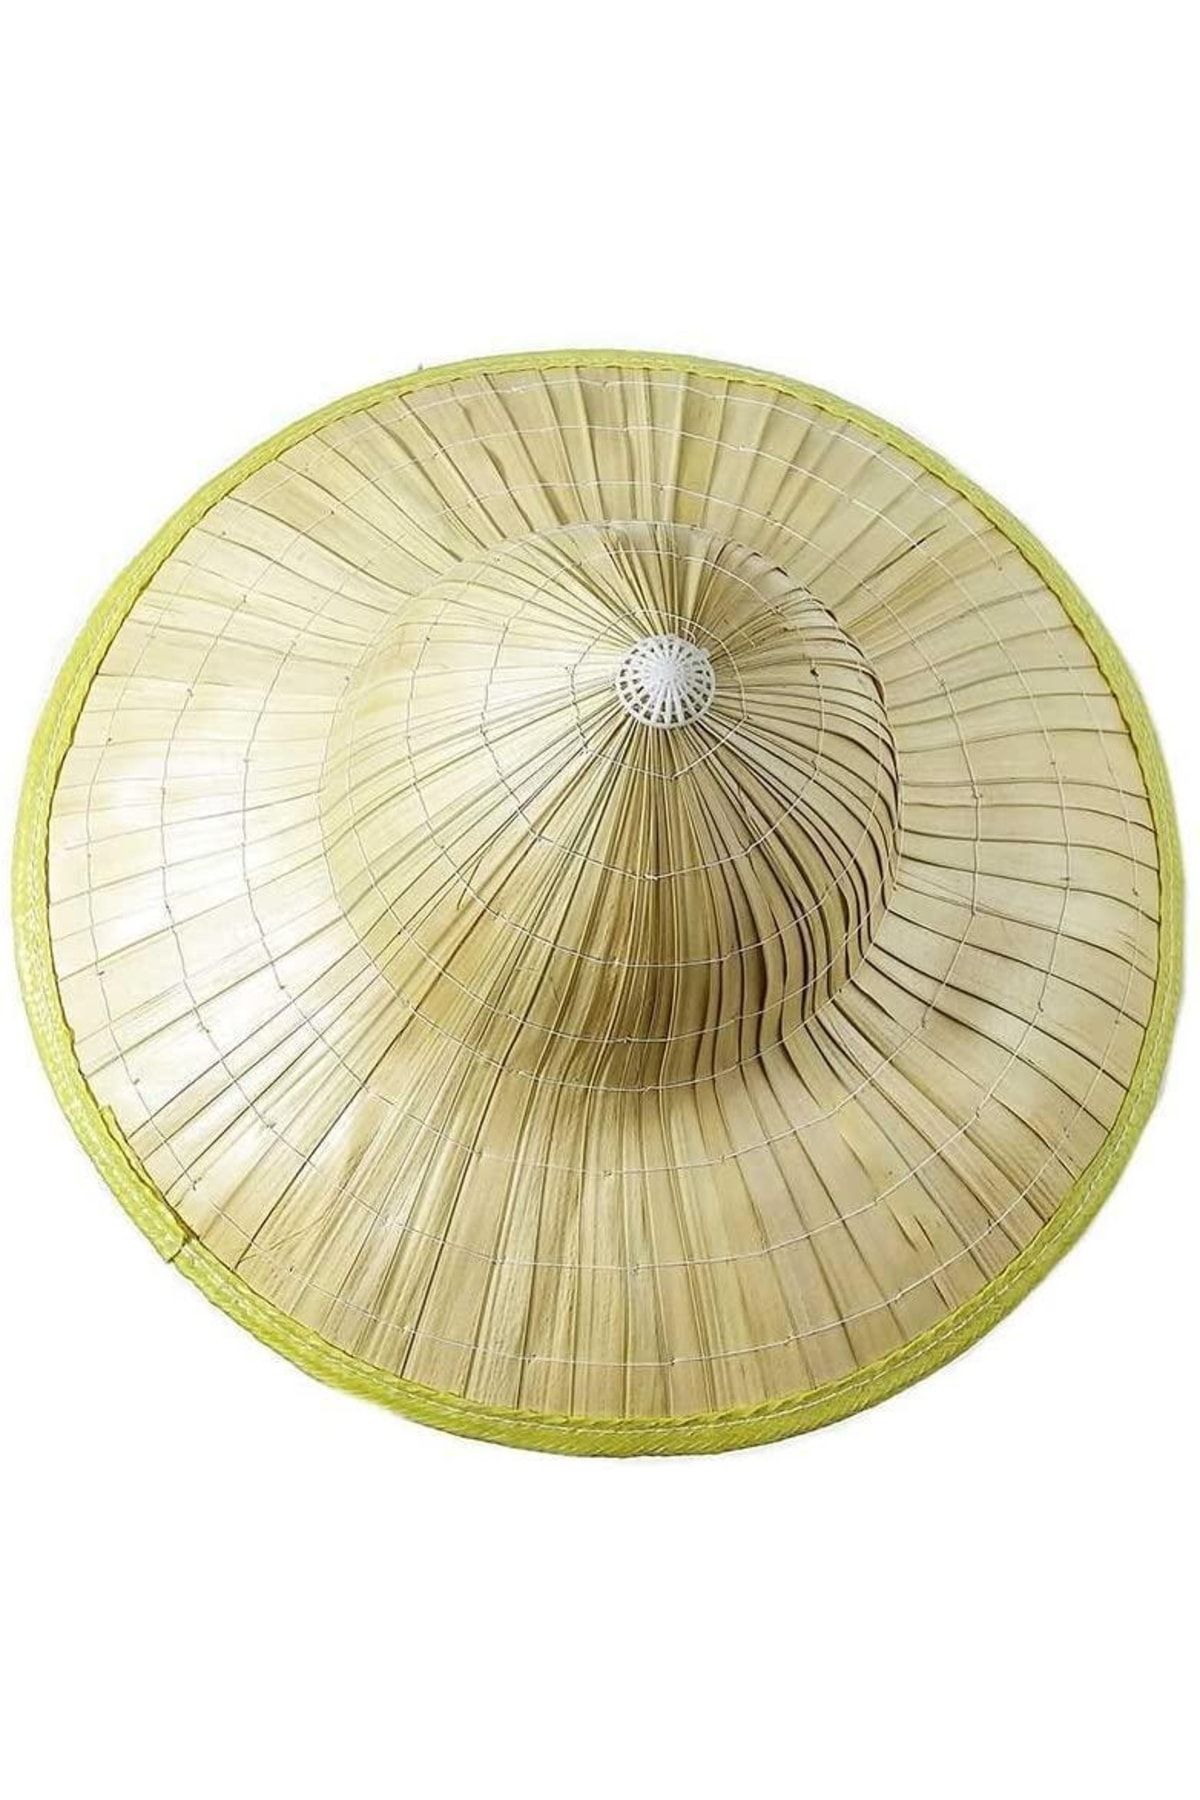 KAYAMU Naturel Renk Hasır Malzeme Bali Şapkası 42x35 Cm